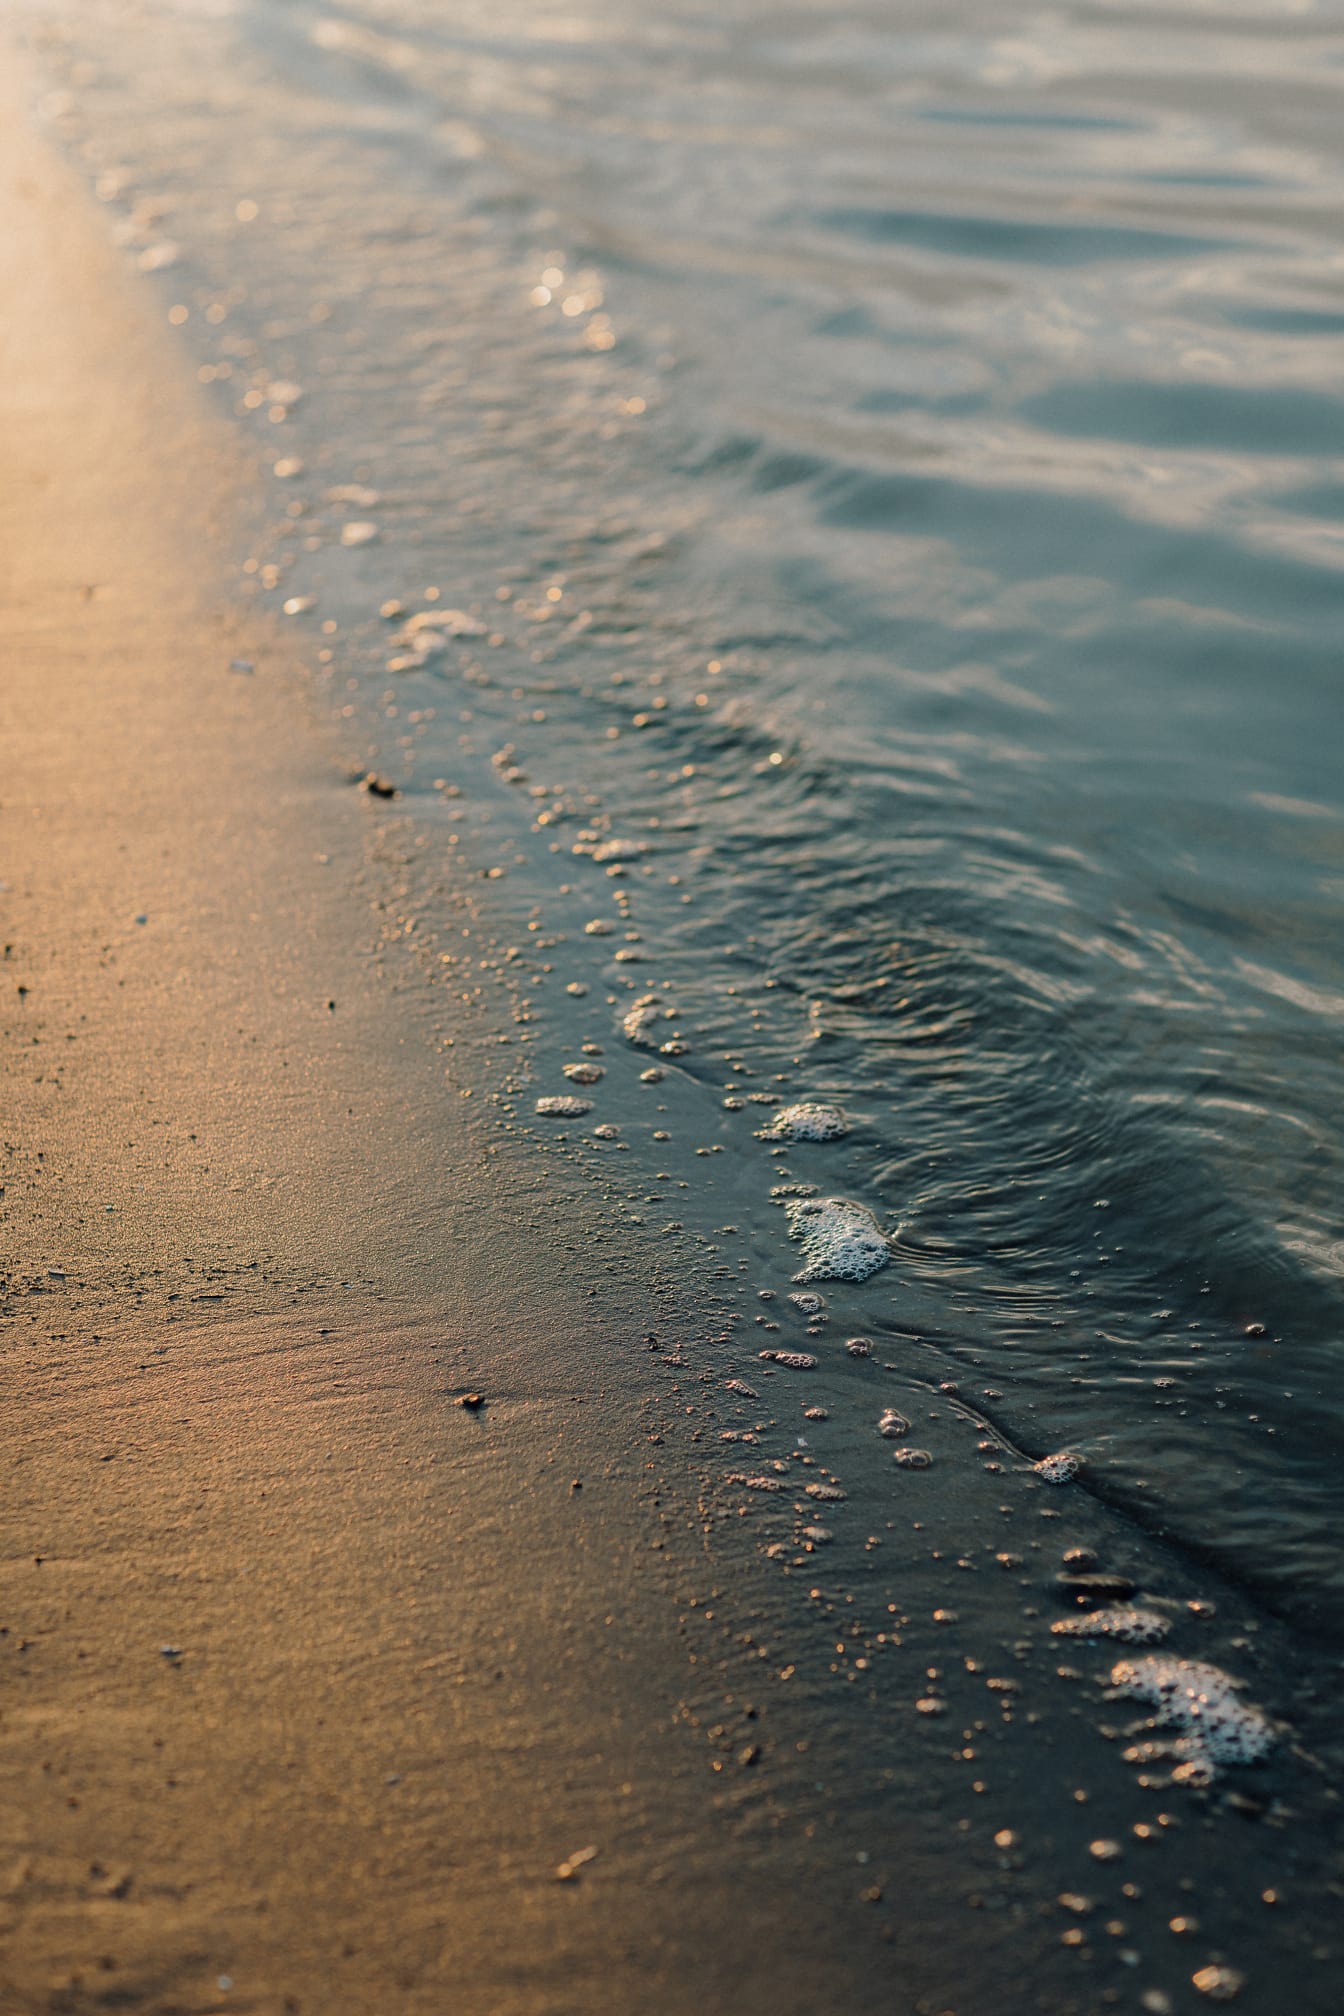 ภาพระยะใกล้ของทรายเปียกบนชายหาดพร้อมแสงสะท้อนของแสงแดดบนเกลียวคลื่น